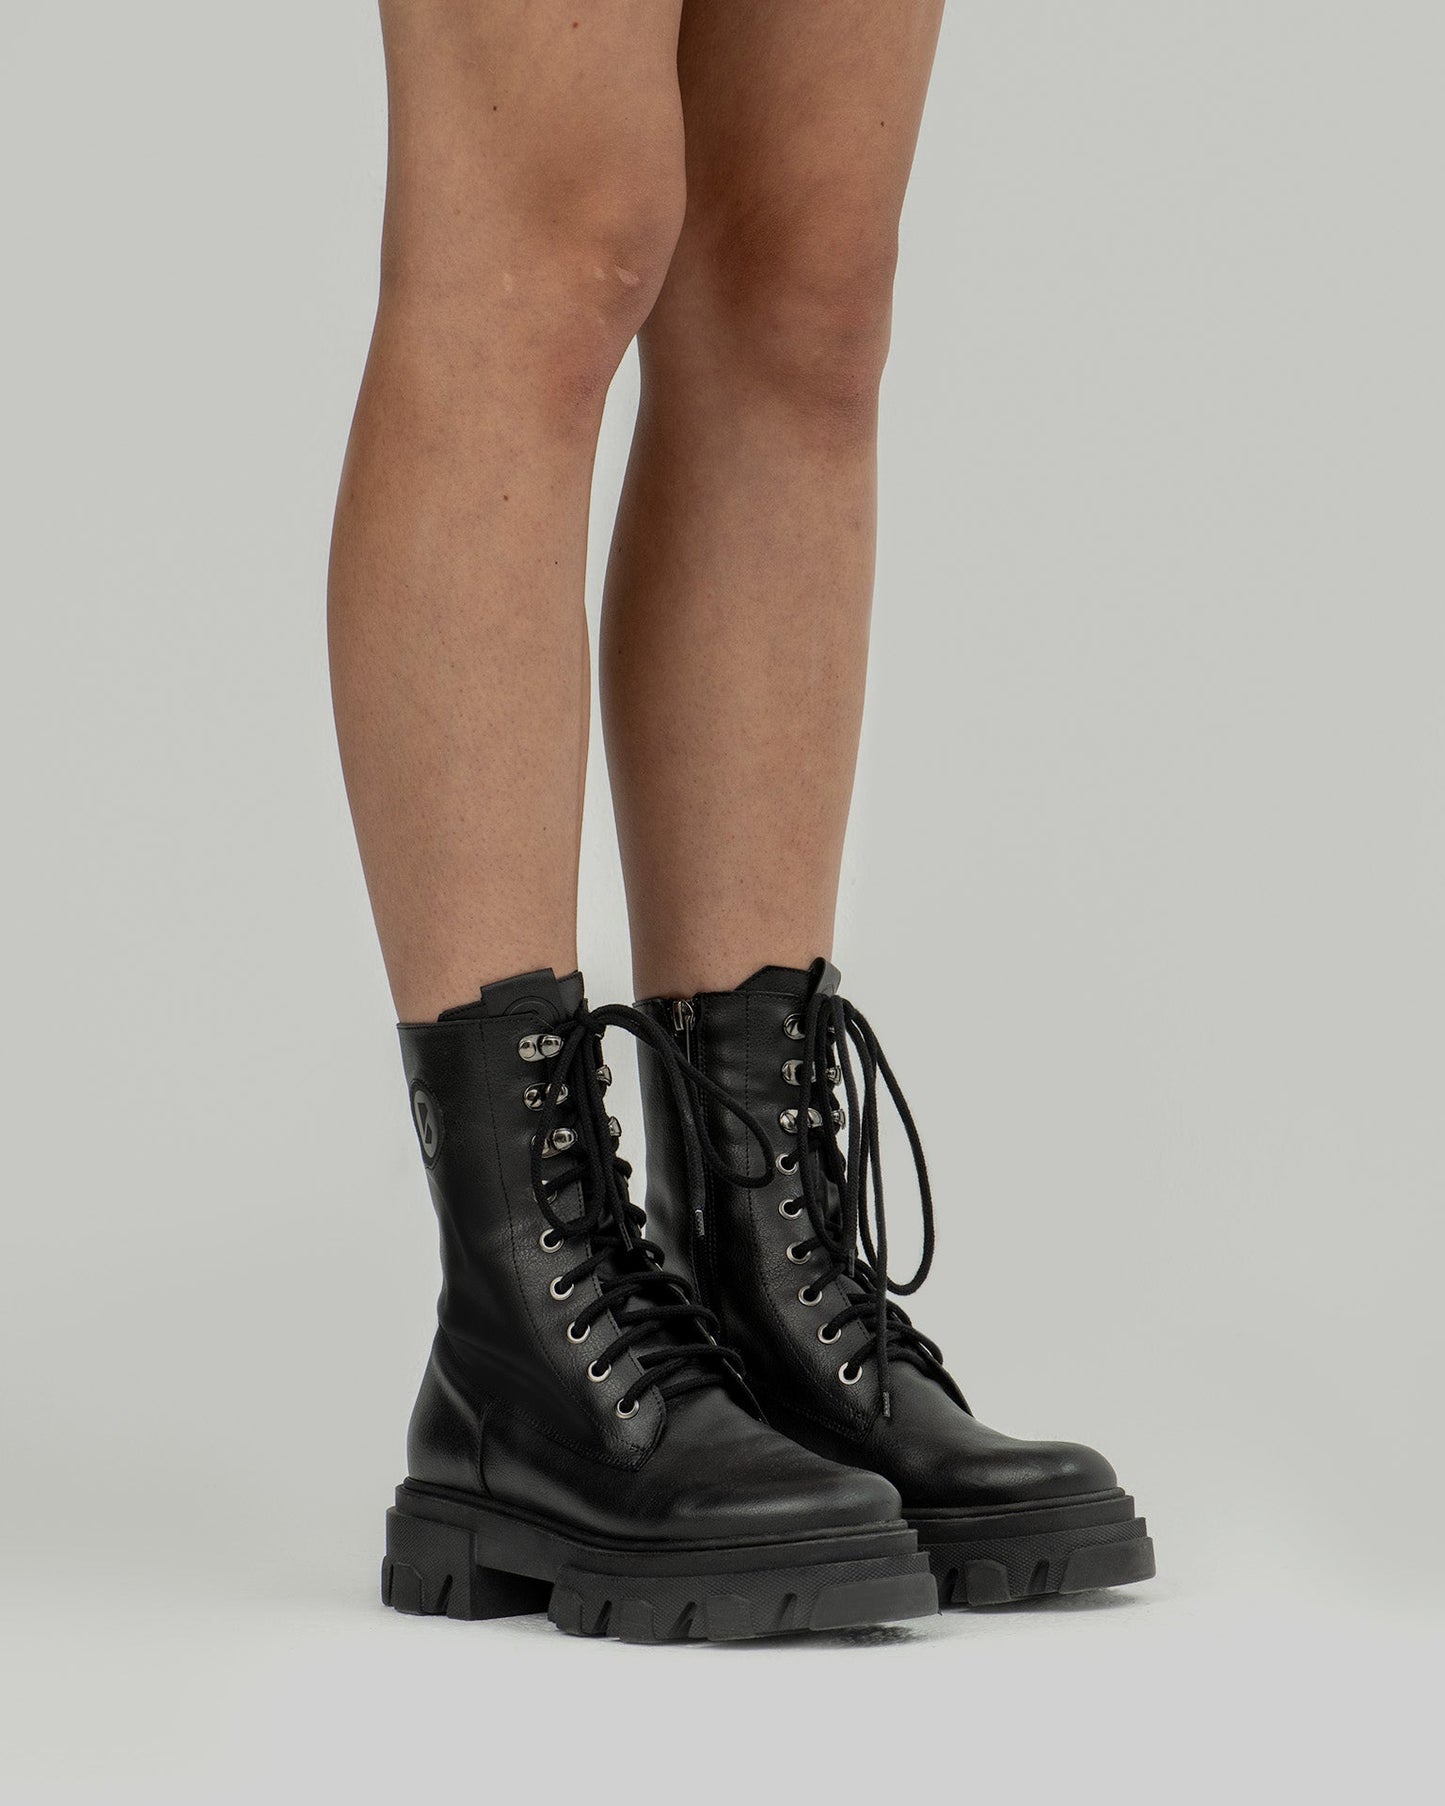 Combat Boots długie wegańskie botki damskie w stylu “worker boots” - model posesyjny